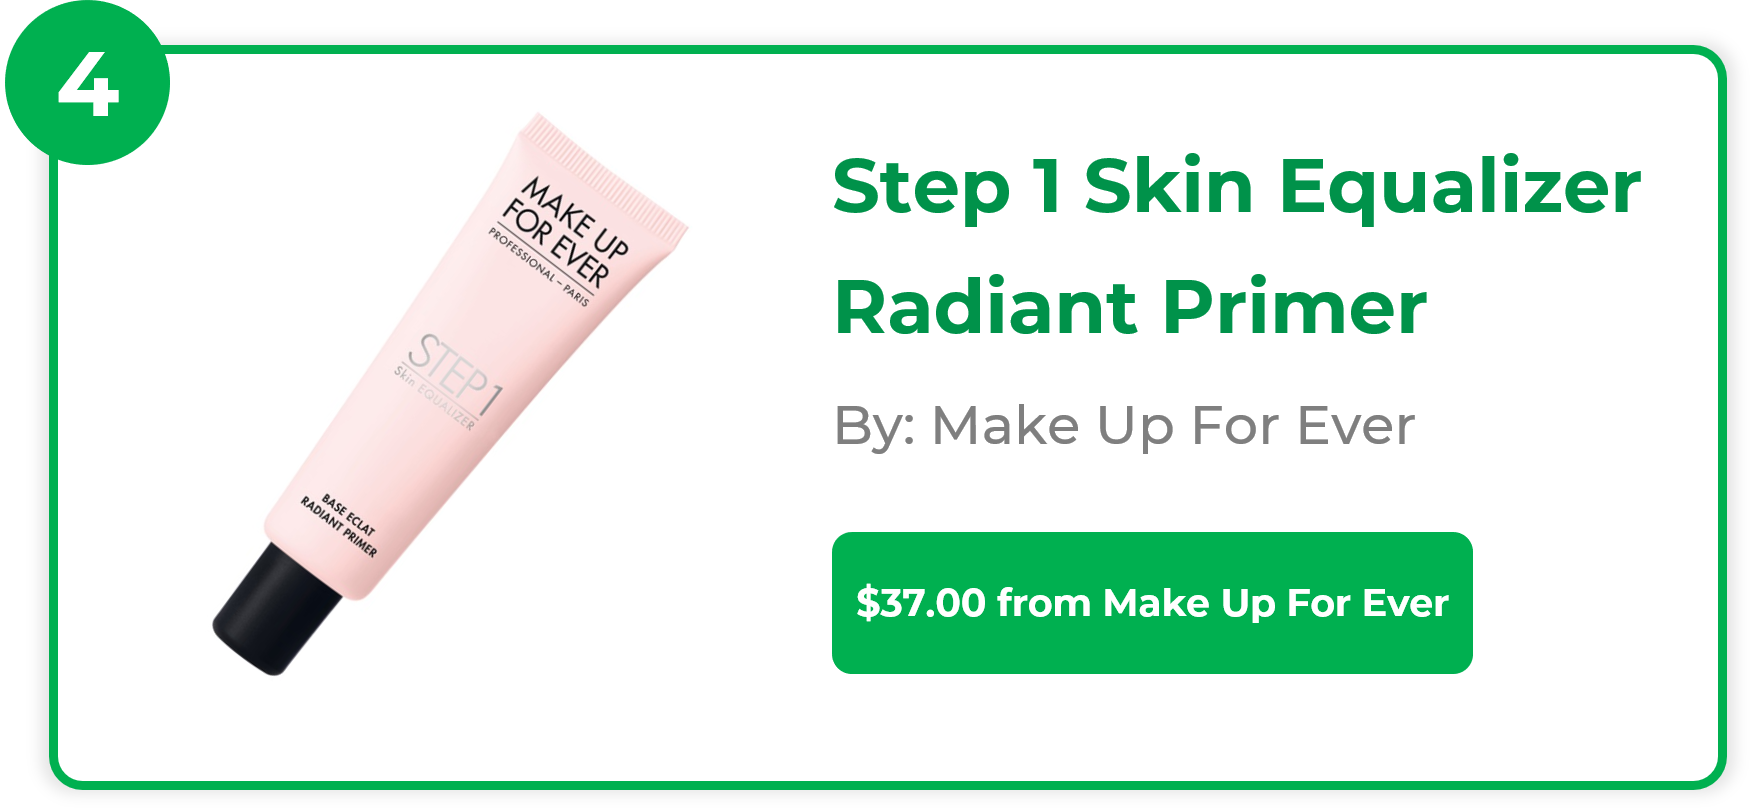 Step 1 Skin Equalizer Radiant Primer - Make Up For Ever